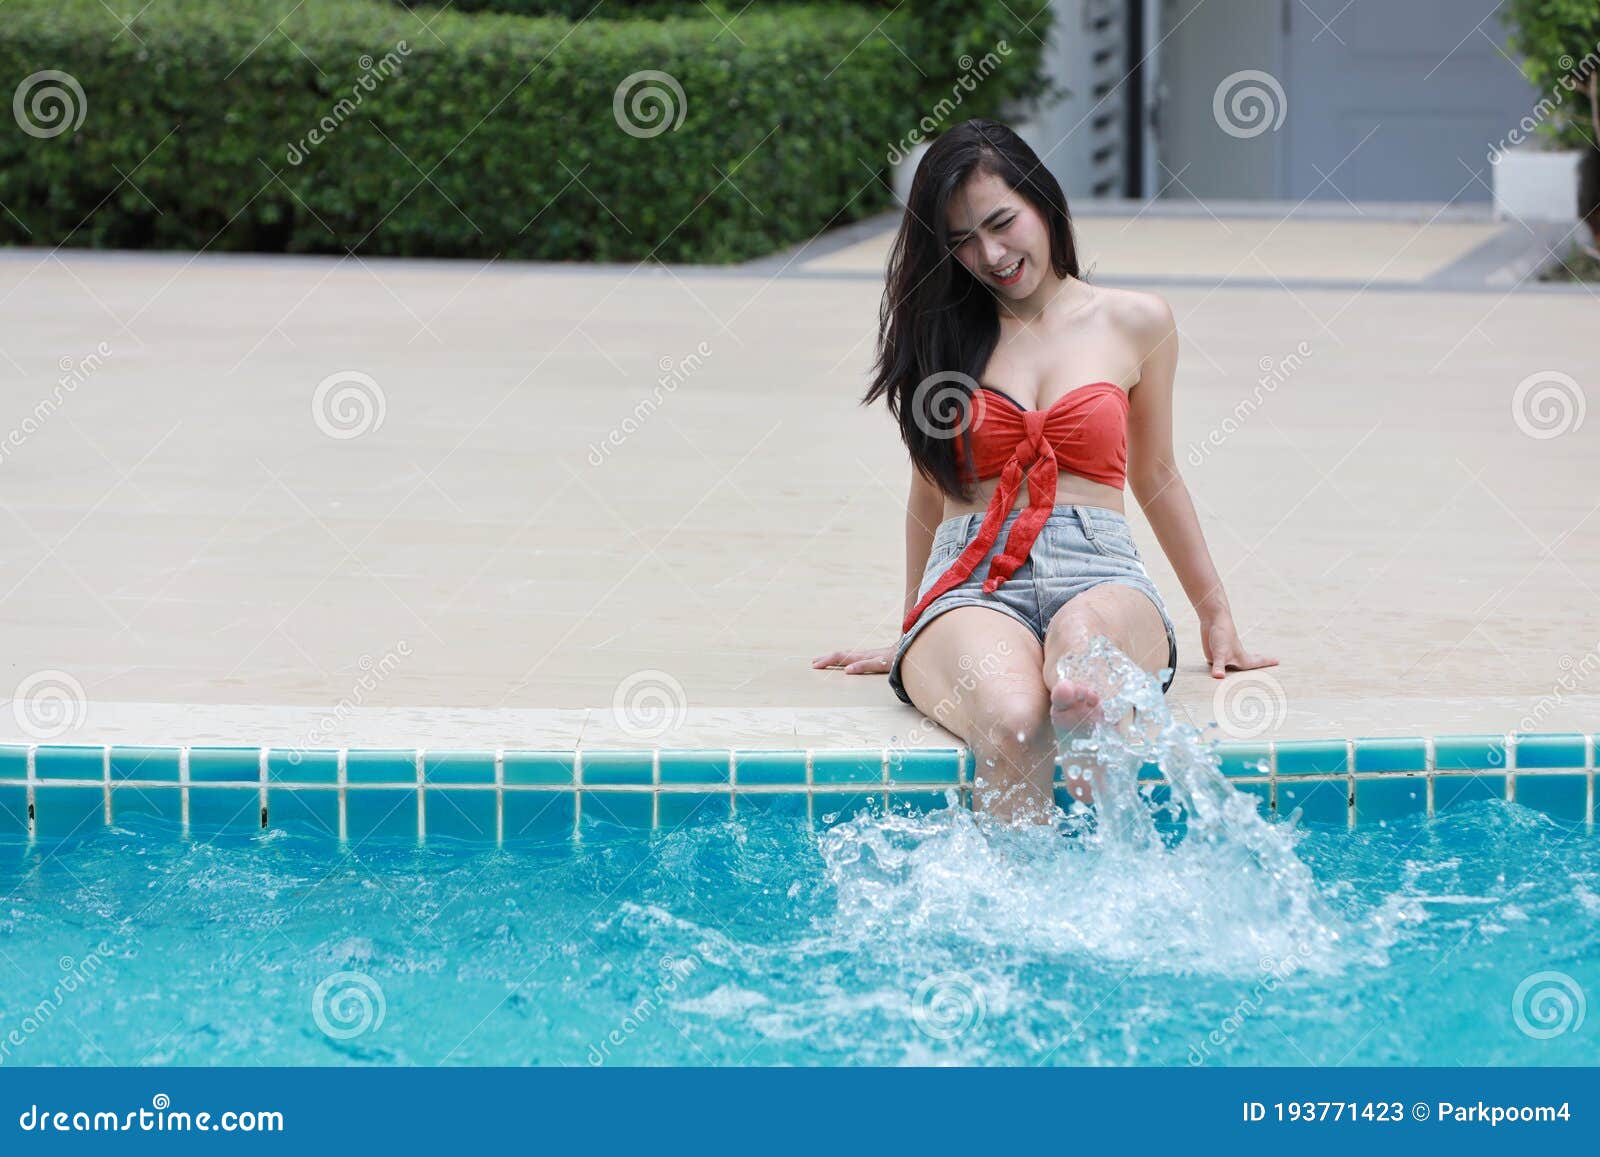 Happy Beautiful And Woman In Orange Bikini Learn To Swim In Hotel Pool